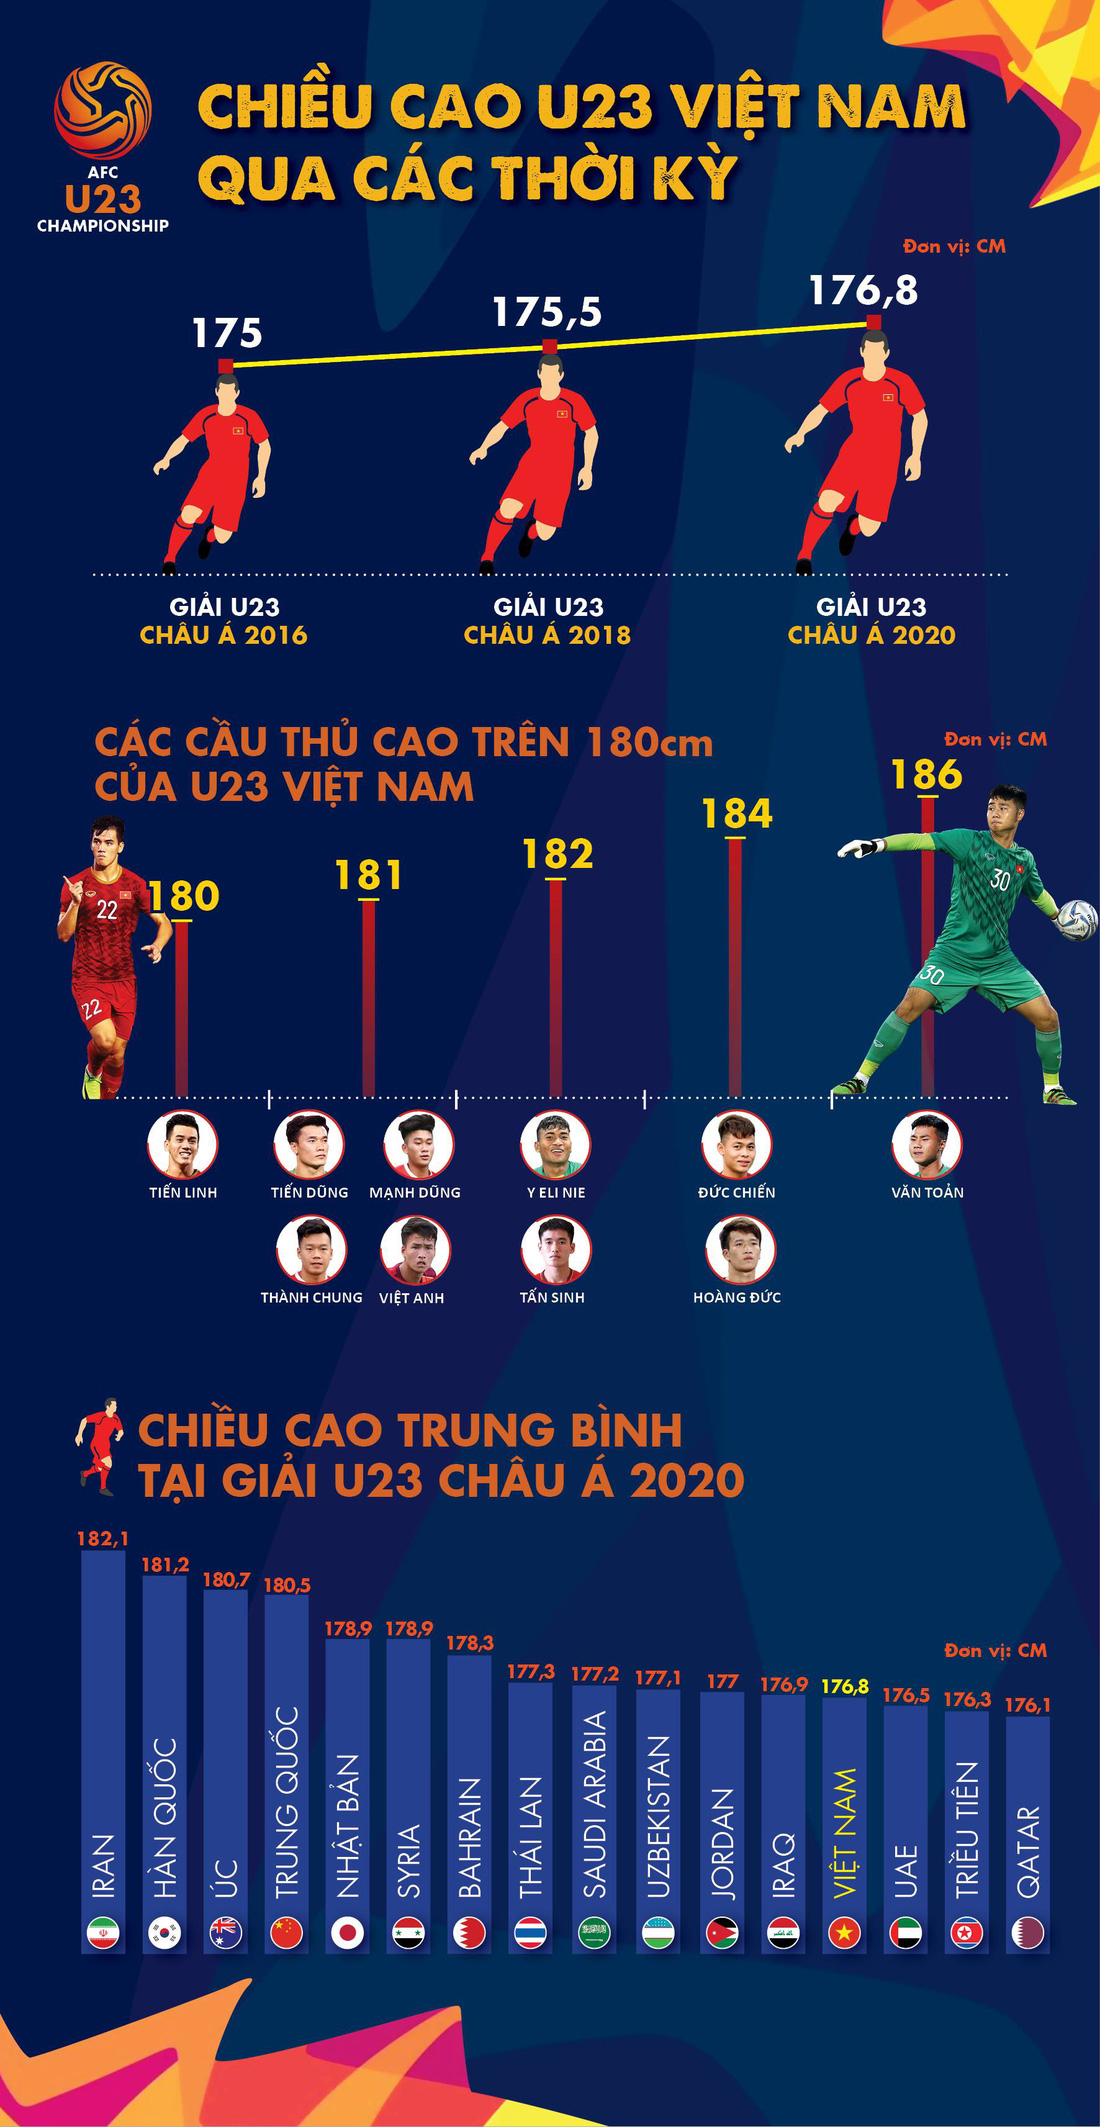 Chùm ảnh dàn cầu thủ cao trên 1m80 của U23 Việt Nam dự Giải U23 châu Á 2020 - Ảnh 11.